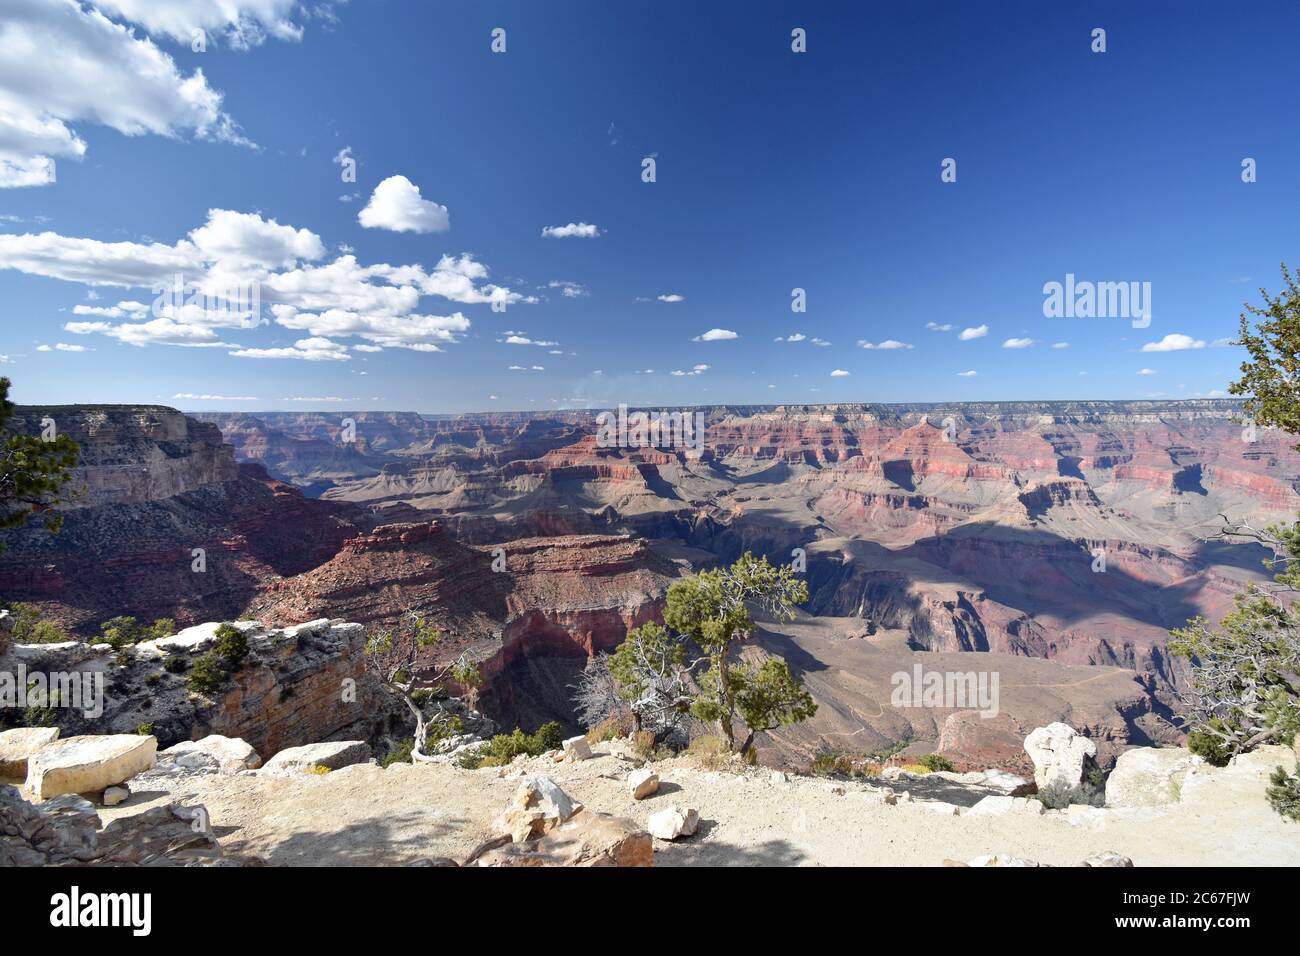 Ein landschaftlich schöner Blick auf den Grand Canyon. Rote Felsformationen und grüne Bäume in der Nähe des Randes sind sichtbar. Der Pfad am Südrand ist unten sichtbar. Stockfoto